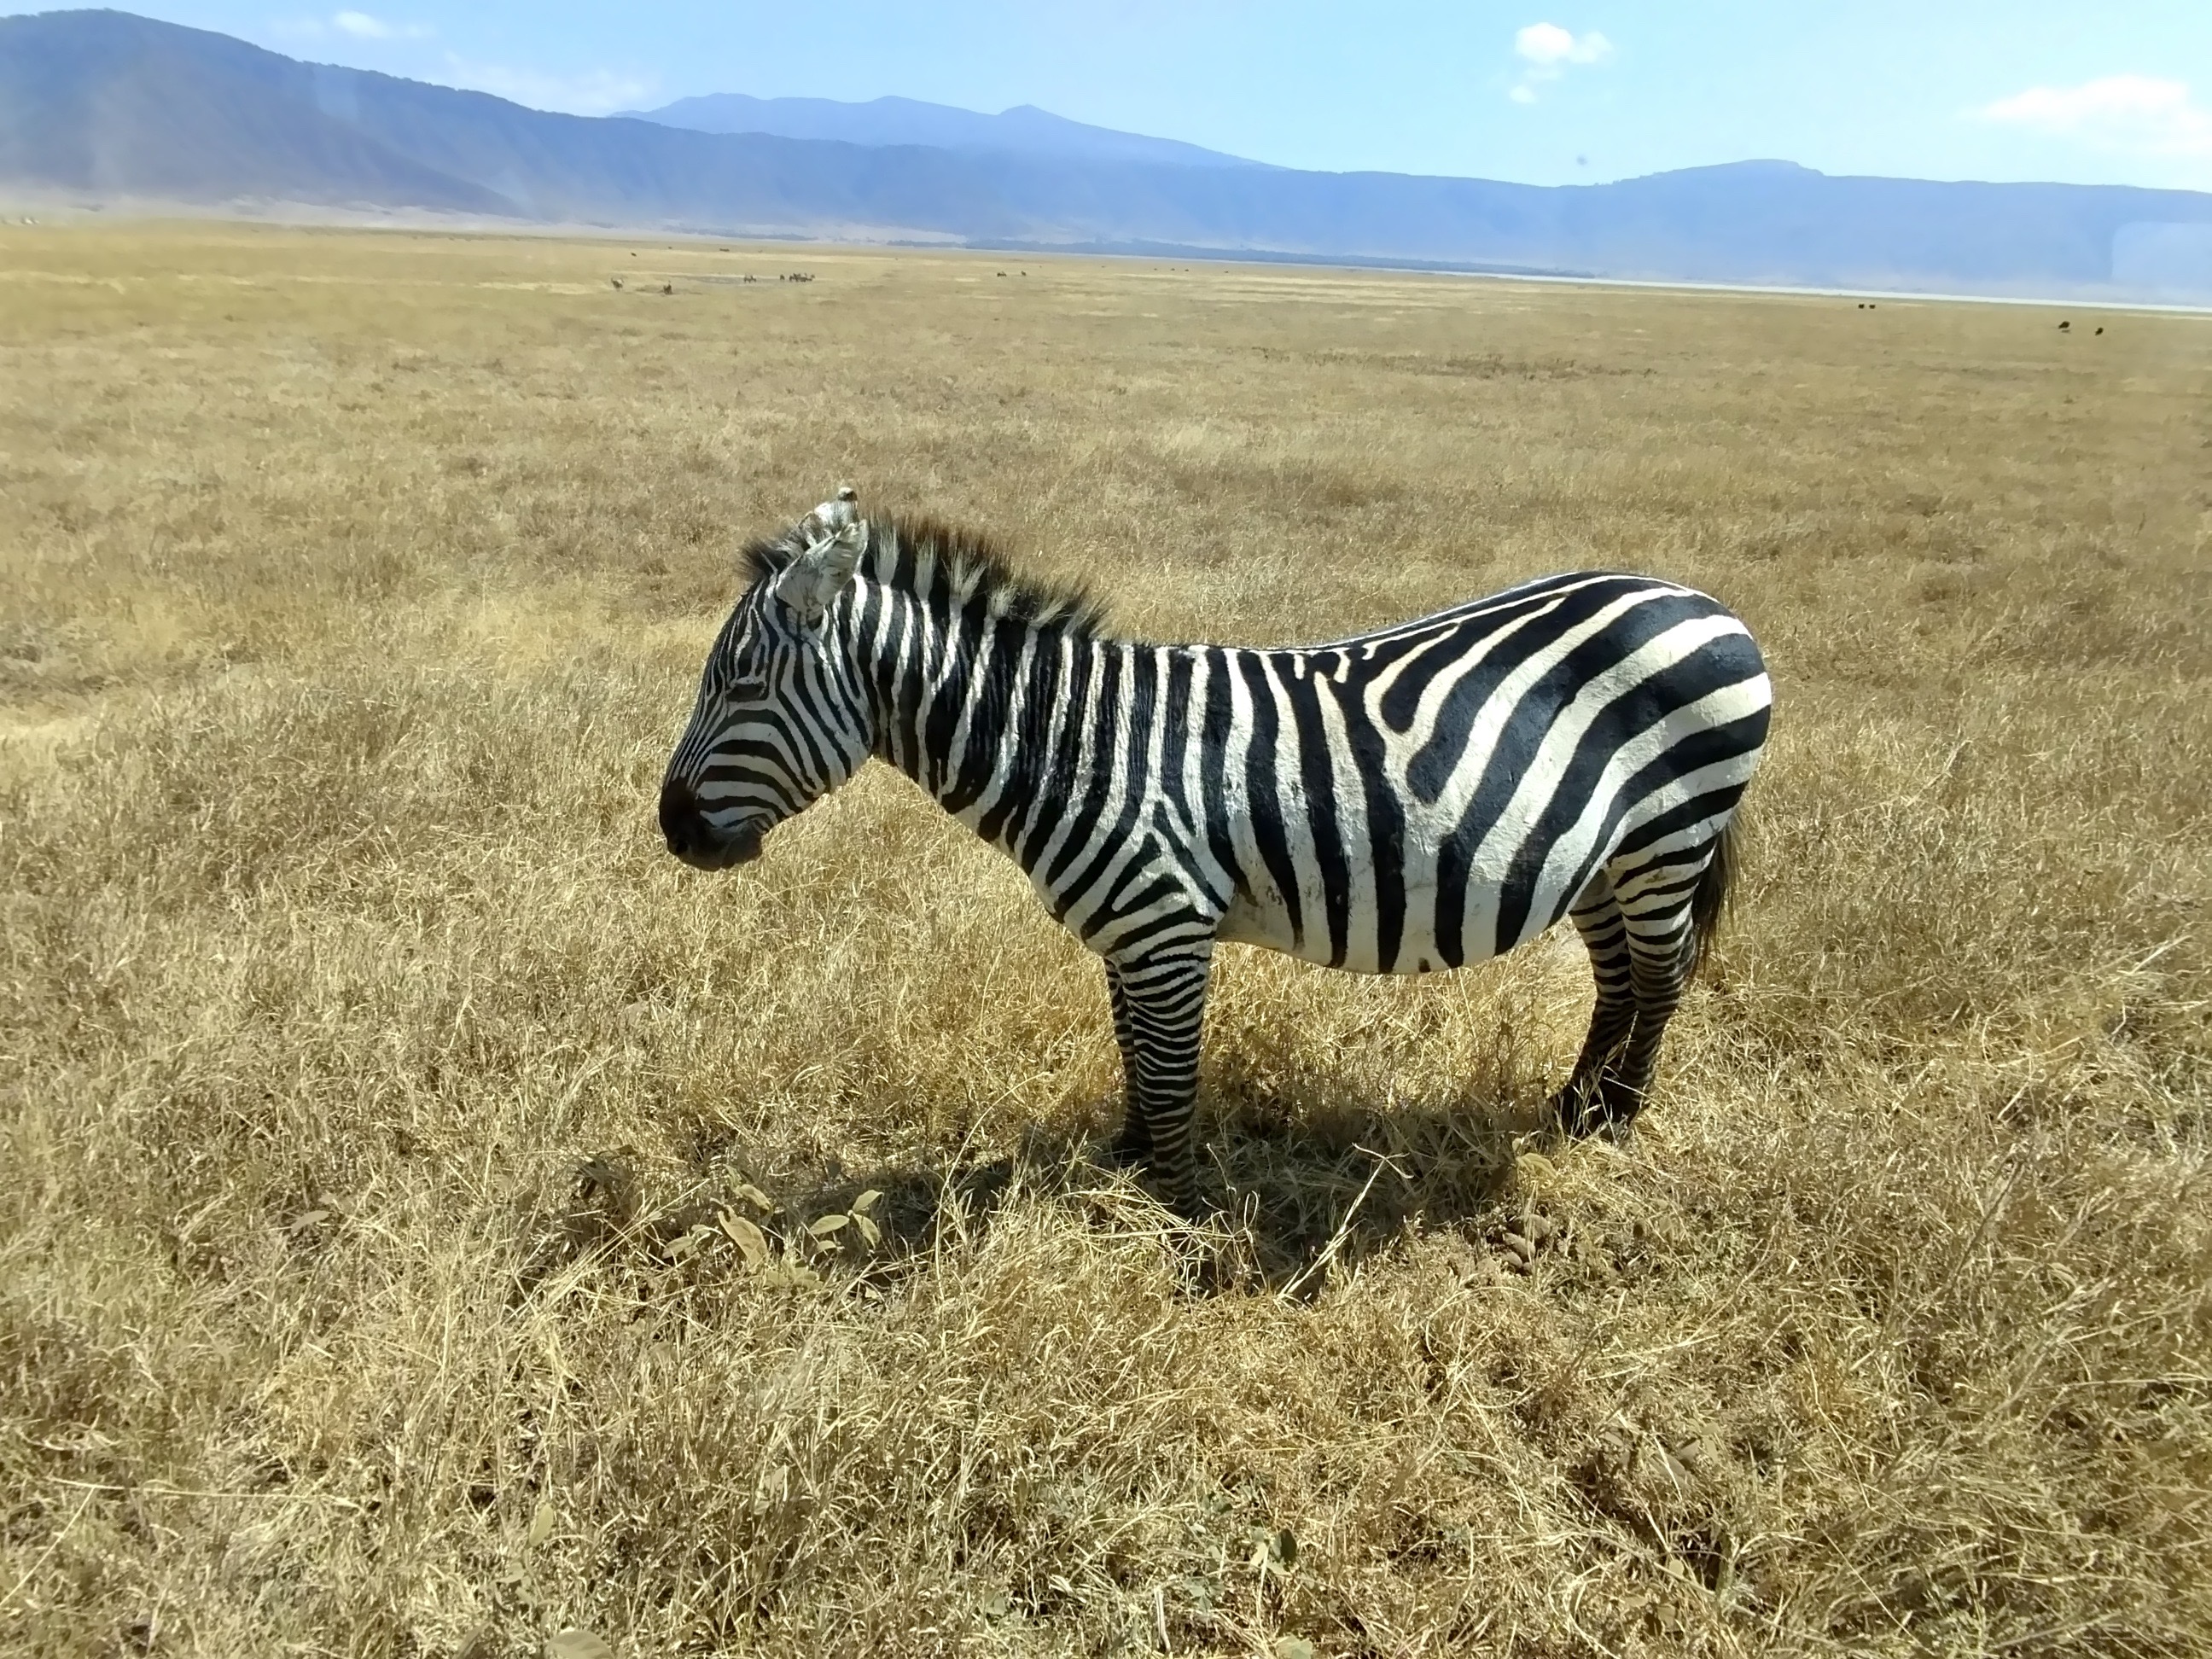 A zebra in Tanzania